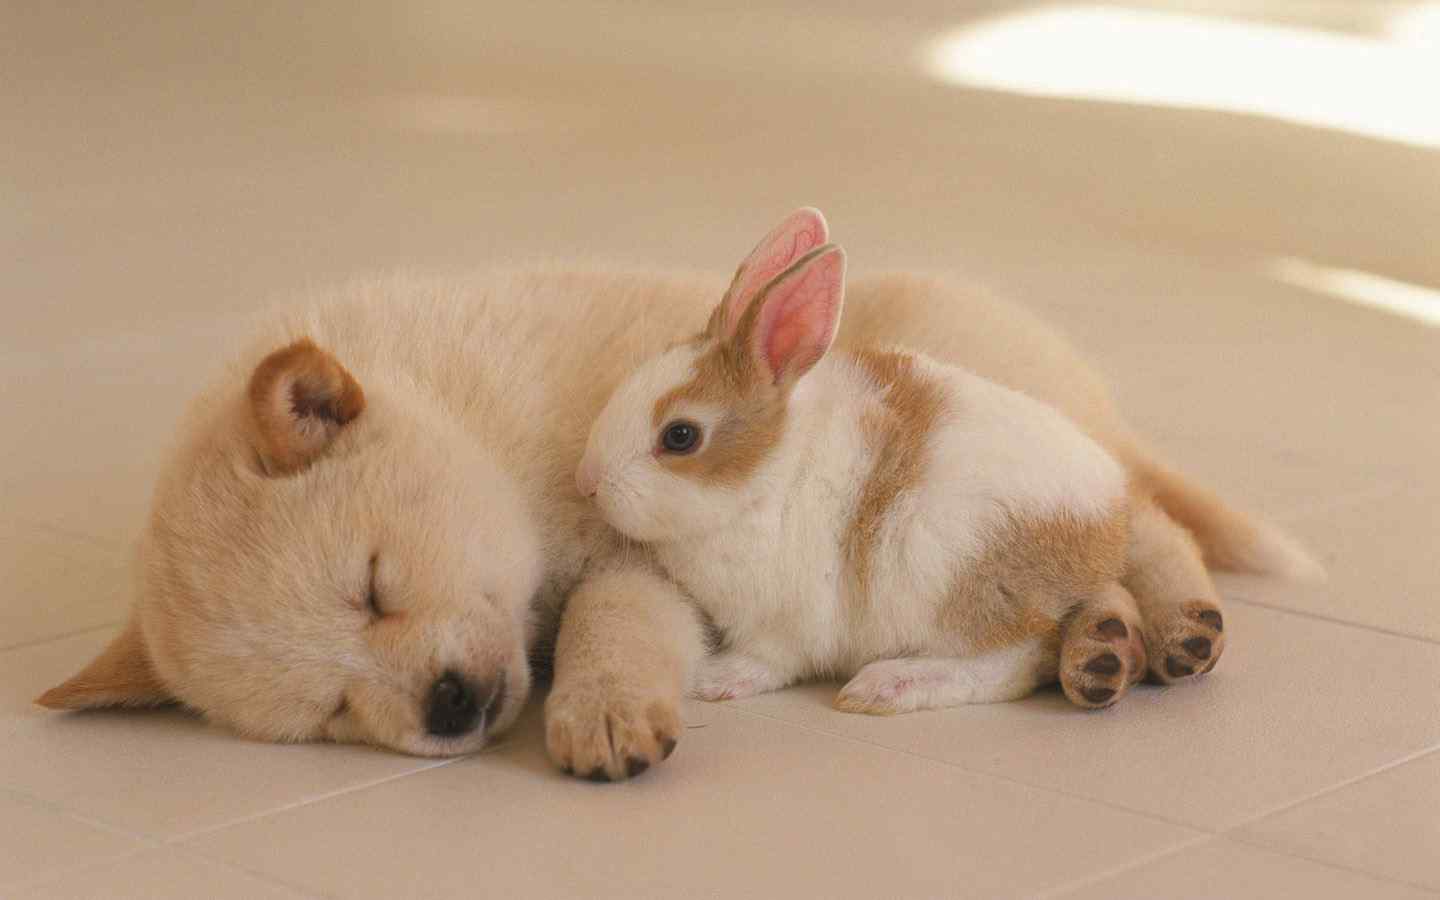 睡着的中华田园犬和可爱的小兔兔桌面壁纸